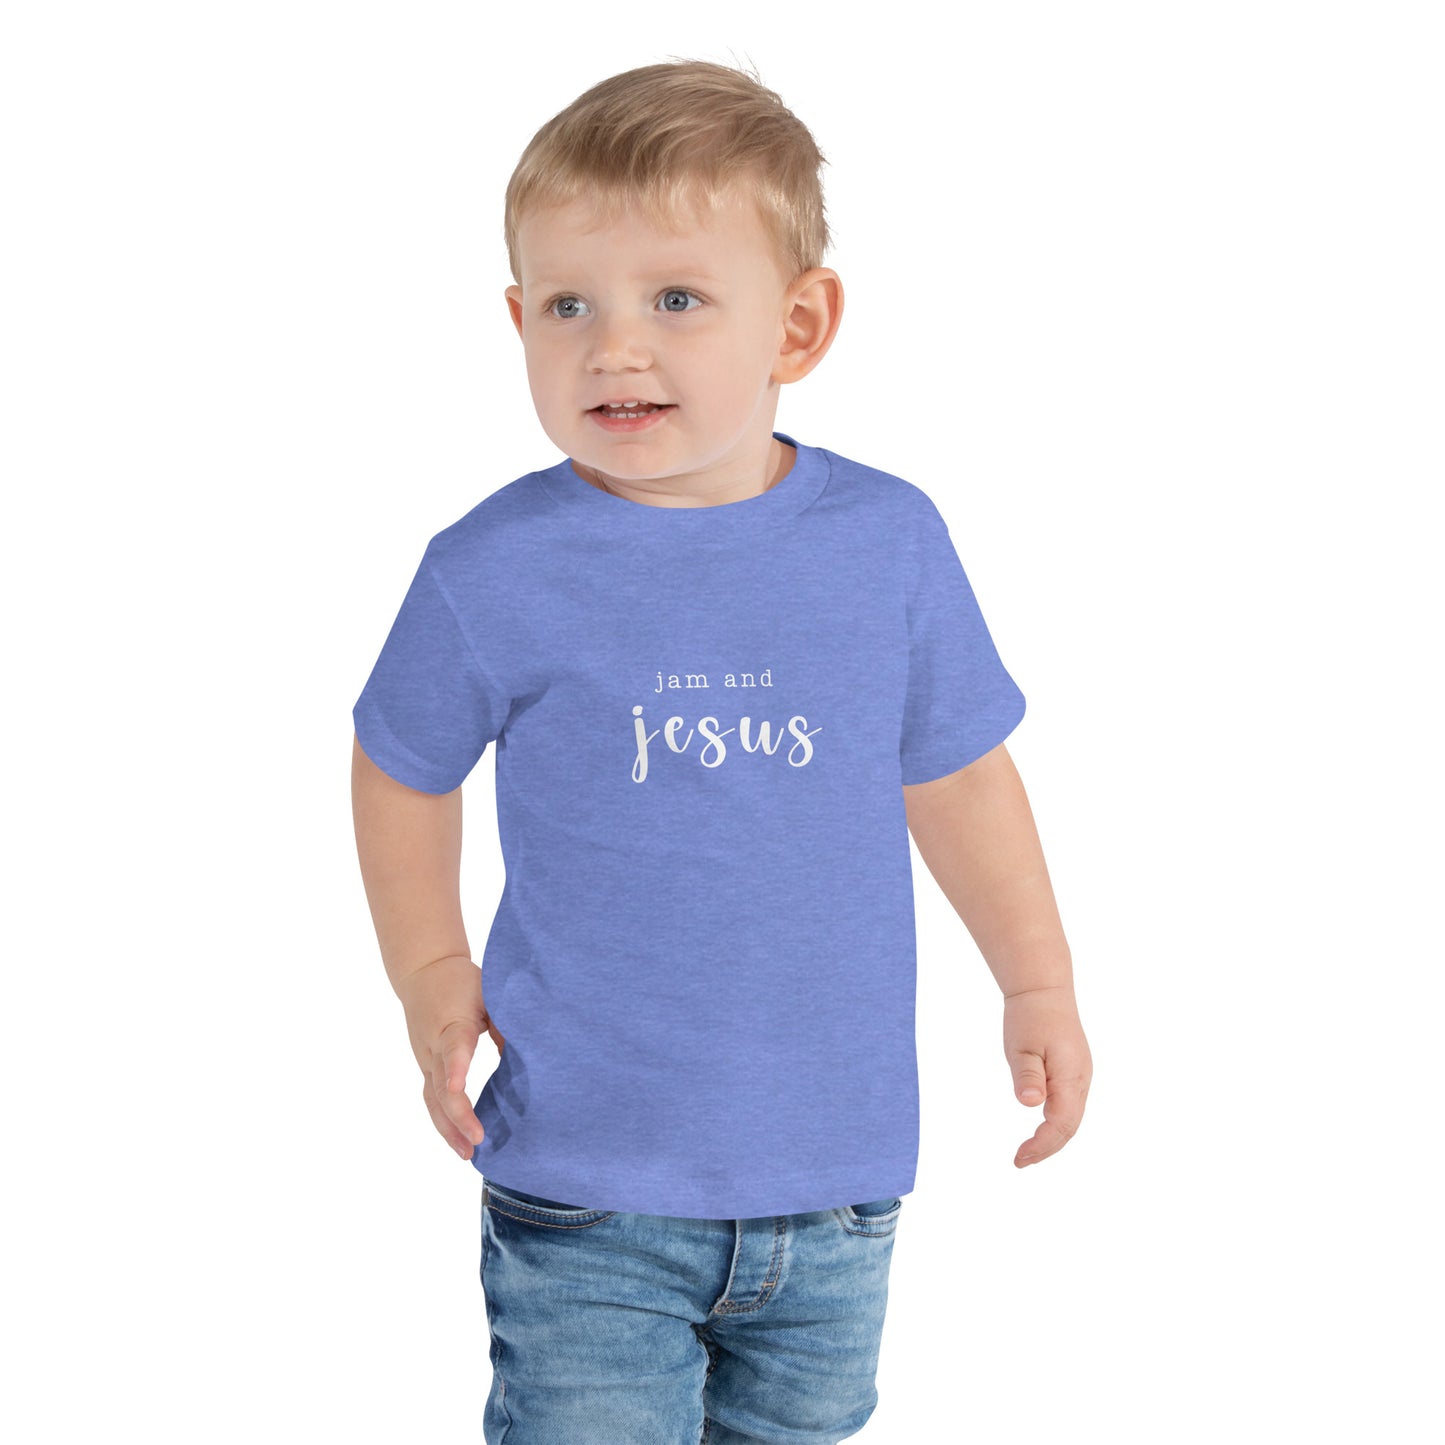 Jam and Jesus Toddler Tee Shirt